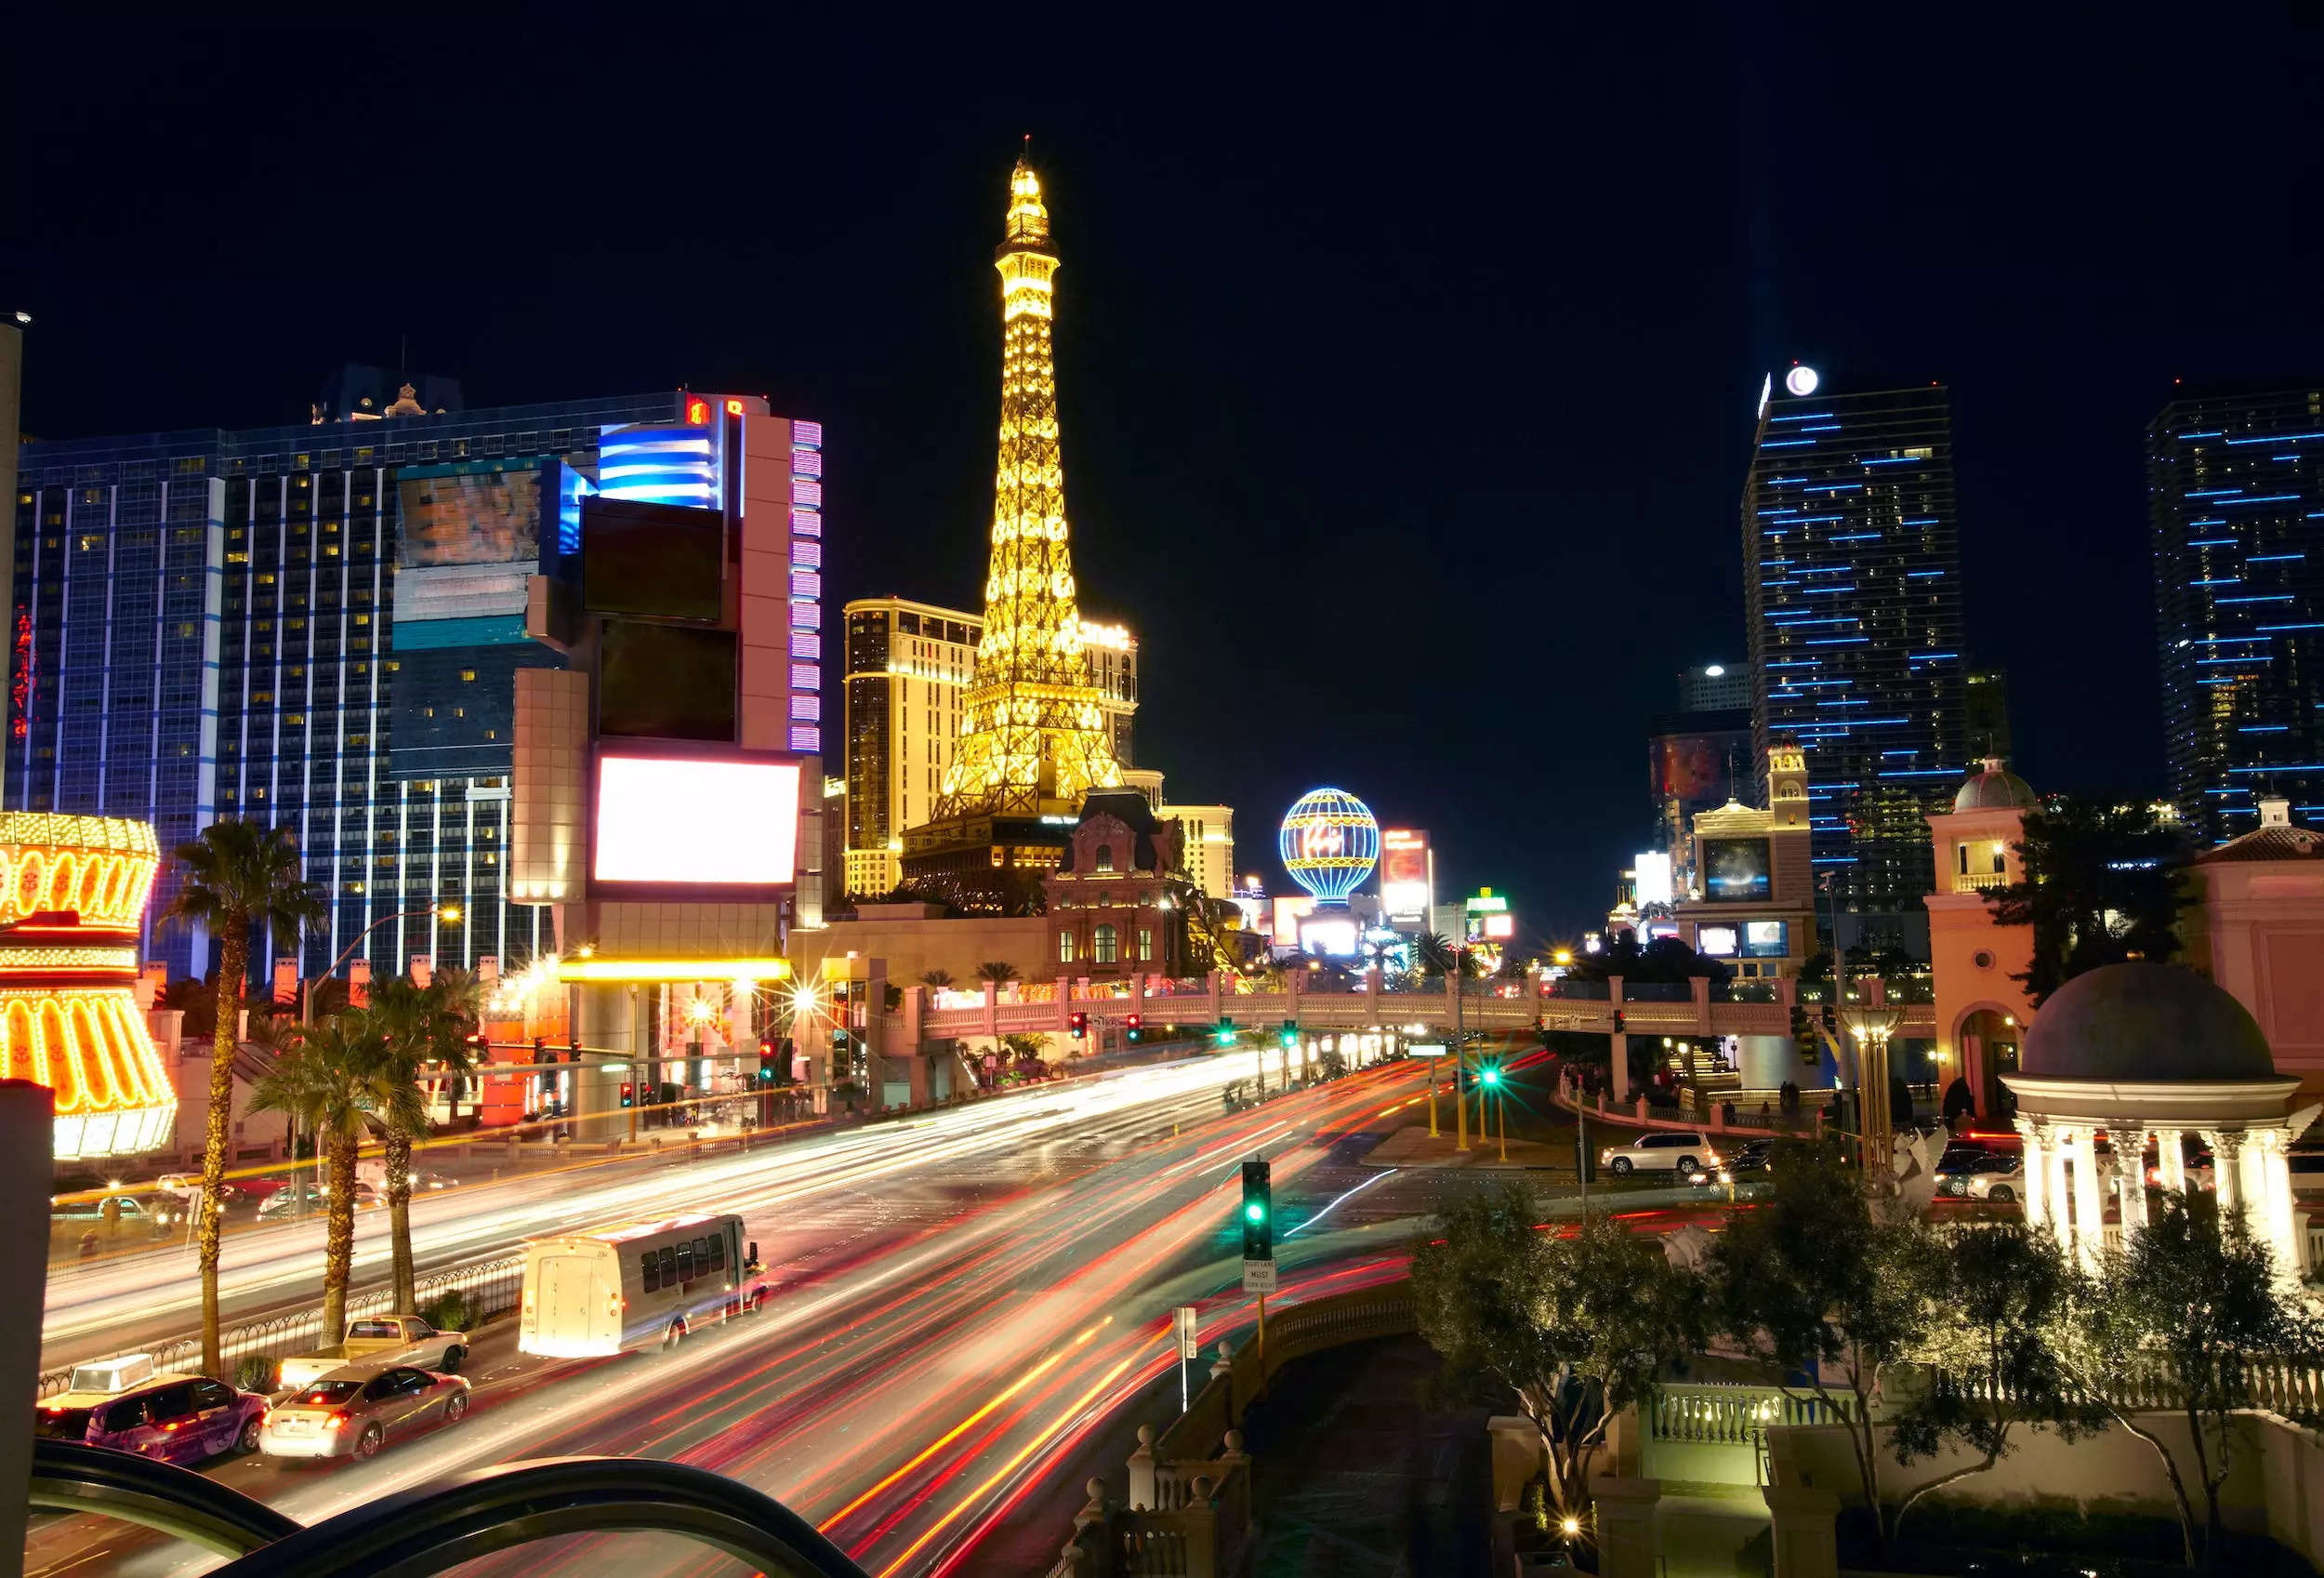 The Las Vegas strip lit up at night.